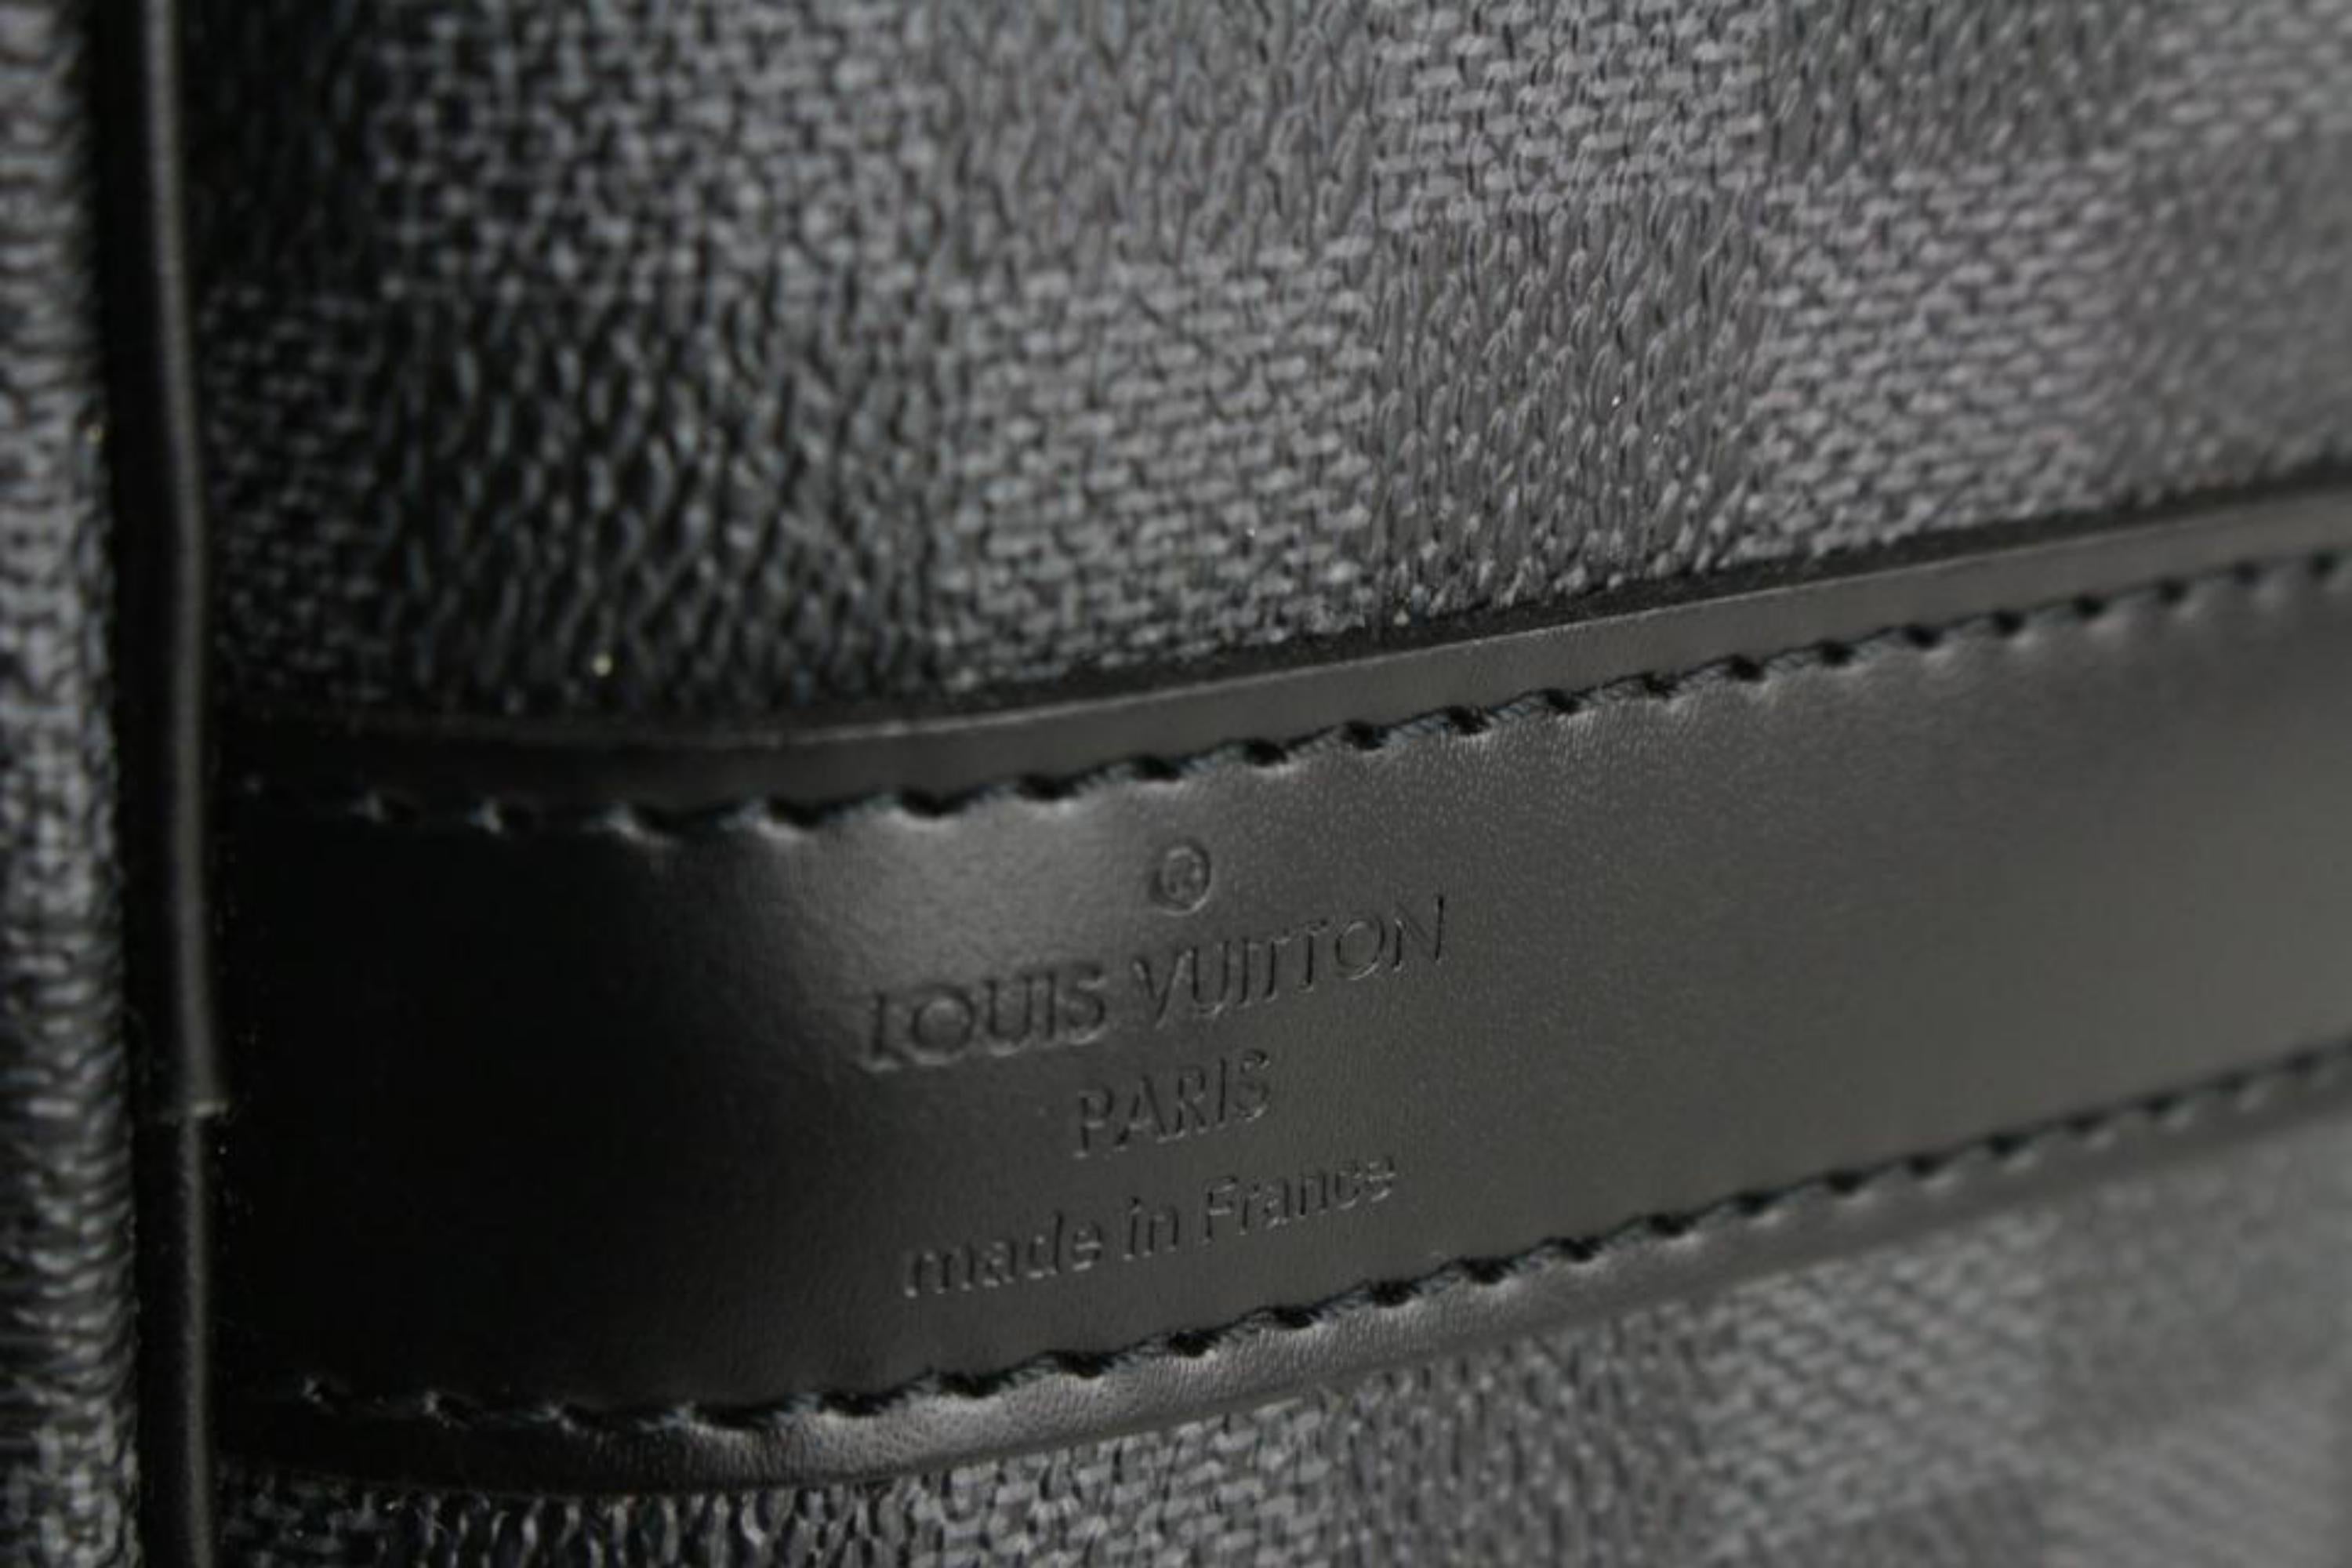 Louis Vuitton 1lz729s For Sale 4